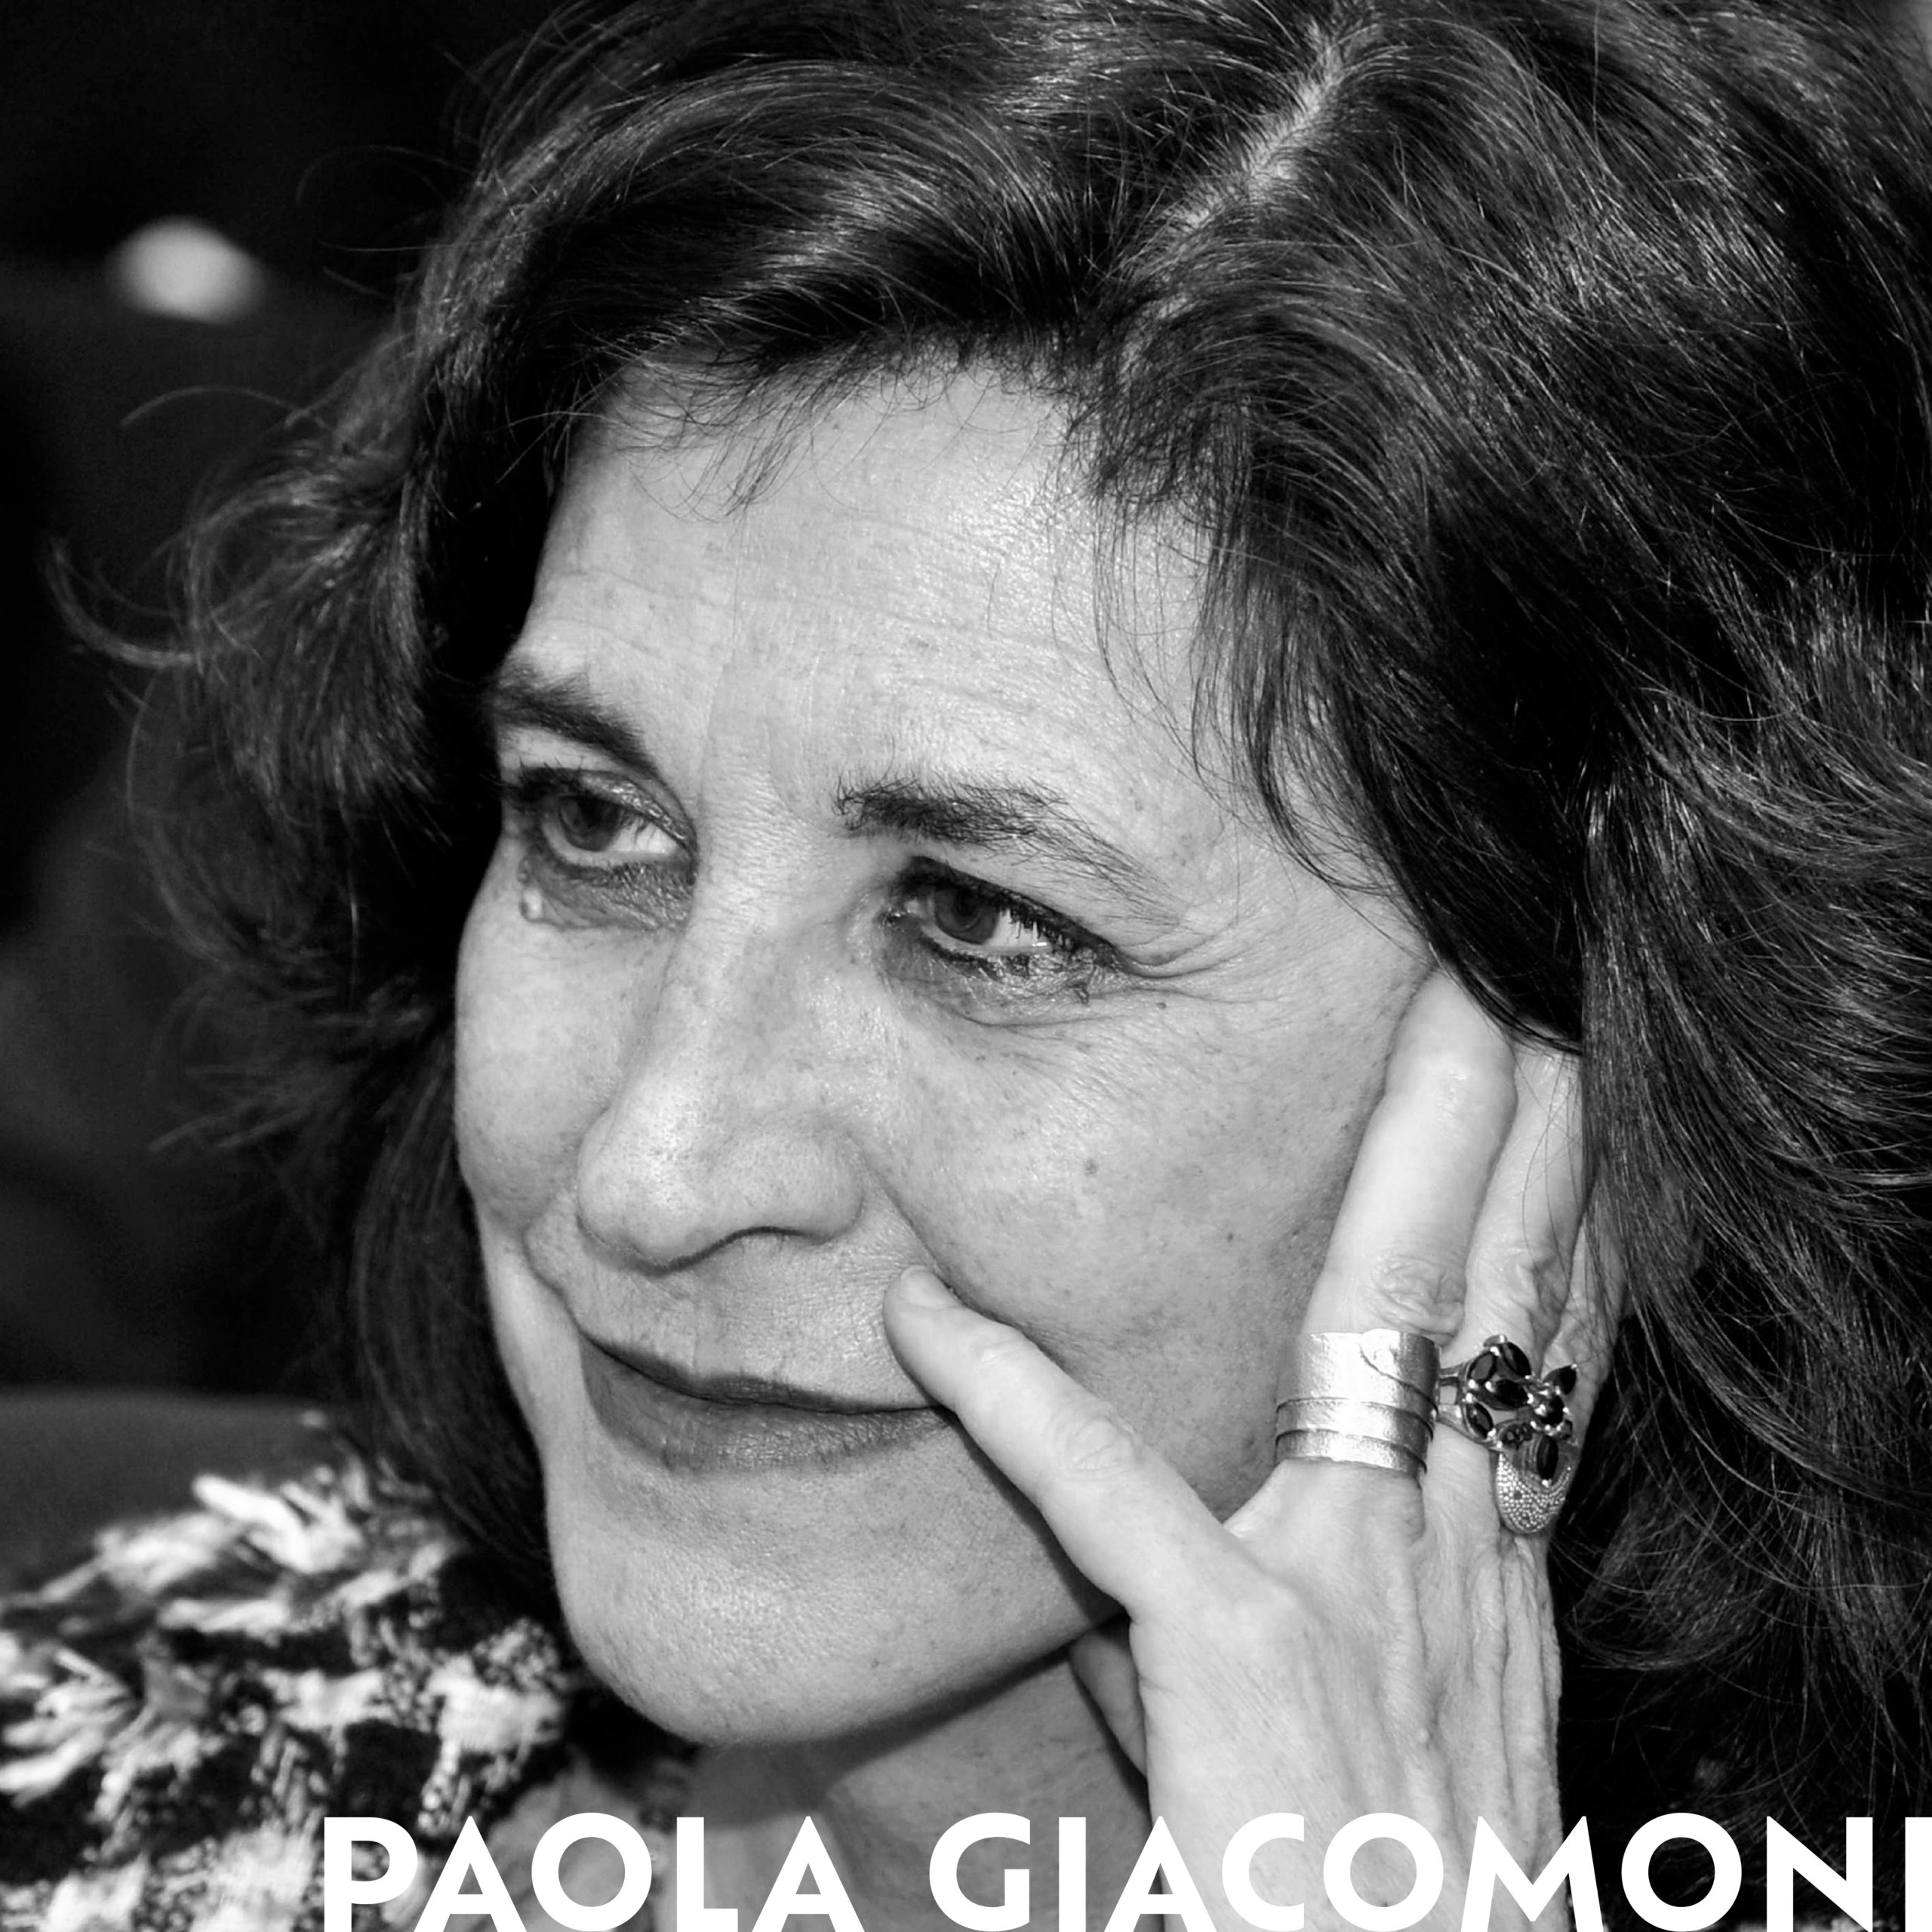 Paola Giacomoni